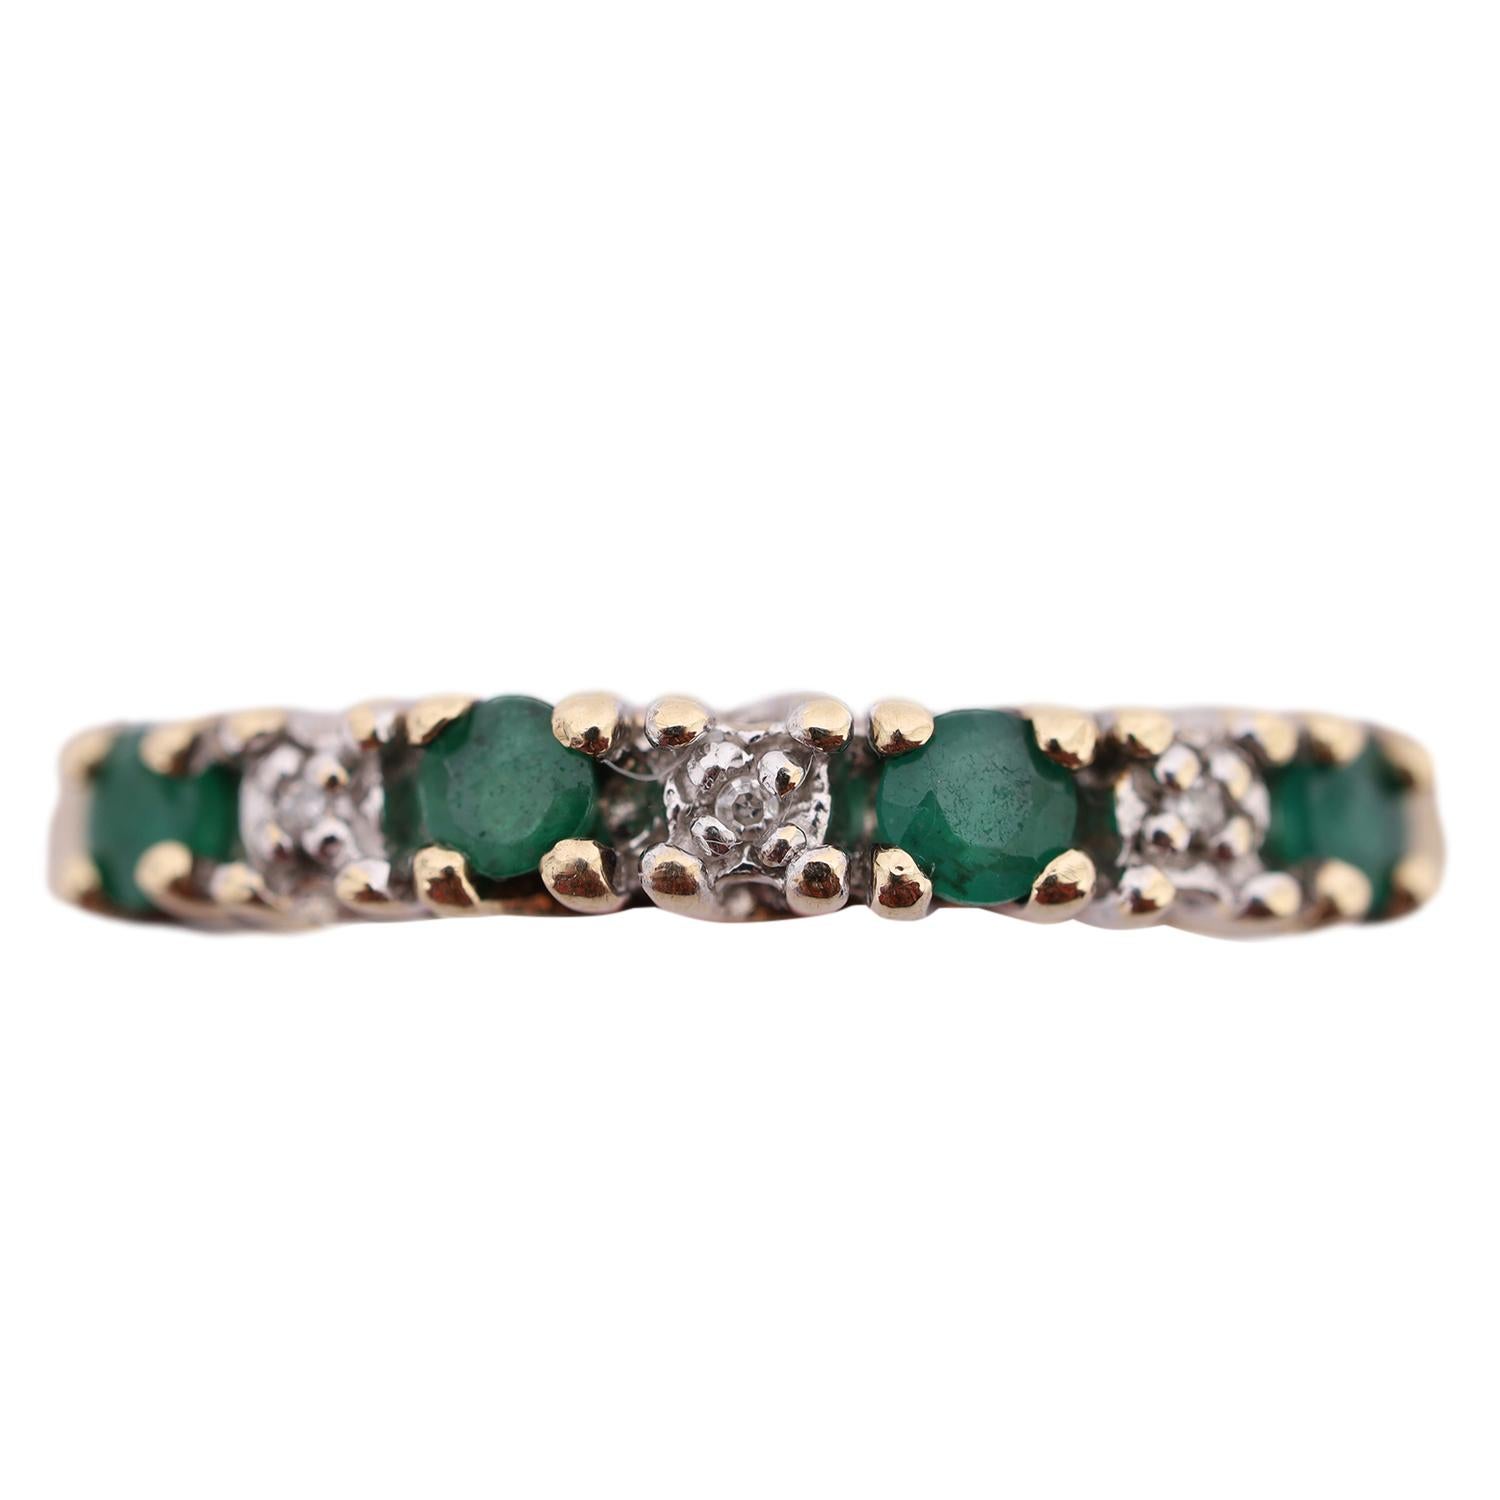 Kuratiert von The Lady Bag Ladies 

10Kt Gelbgold Natürlicher Smaragd und Diamant Stacking Ring.

Der Ring besteht aus insgesamt 4 Smaragden und 3 Diamanten, die alle rund geschliffen und mit Zacken besetzt sind. Die Diamanten sind jeweils etwa 8 mm